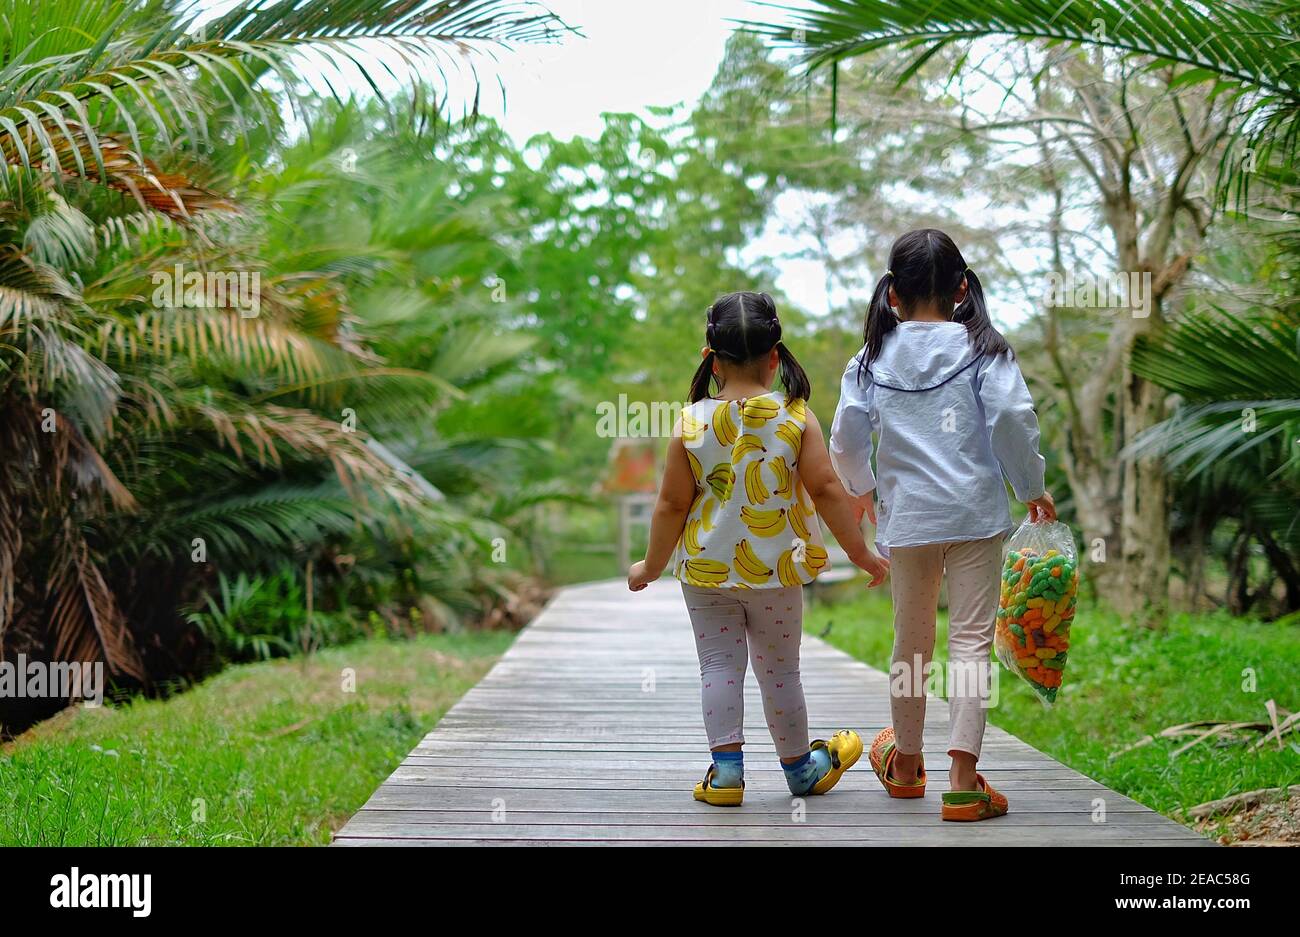 Vue arrière de deux jeunes sœurs asiatiques mignonnes marchant ensemble le long d'un chemin dans un jardin, en tenant les mains. Banque D'Images